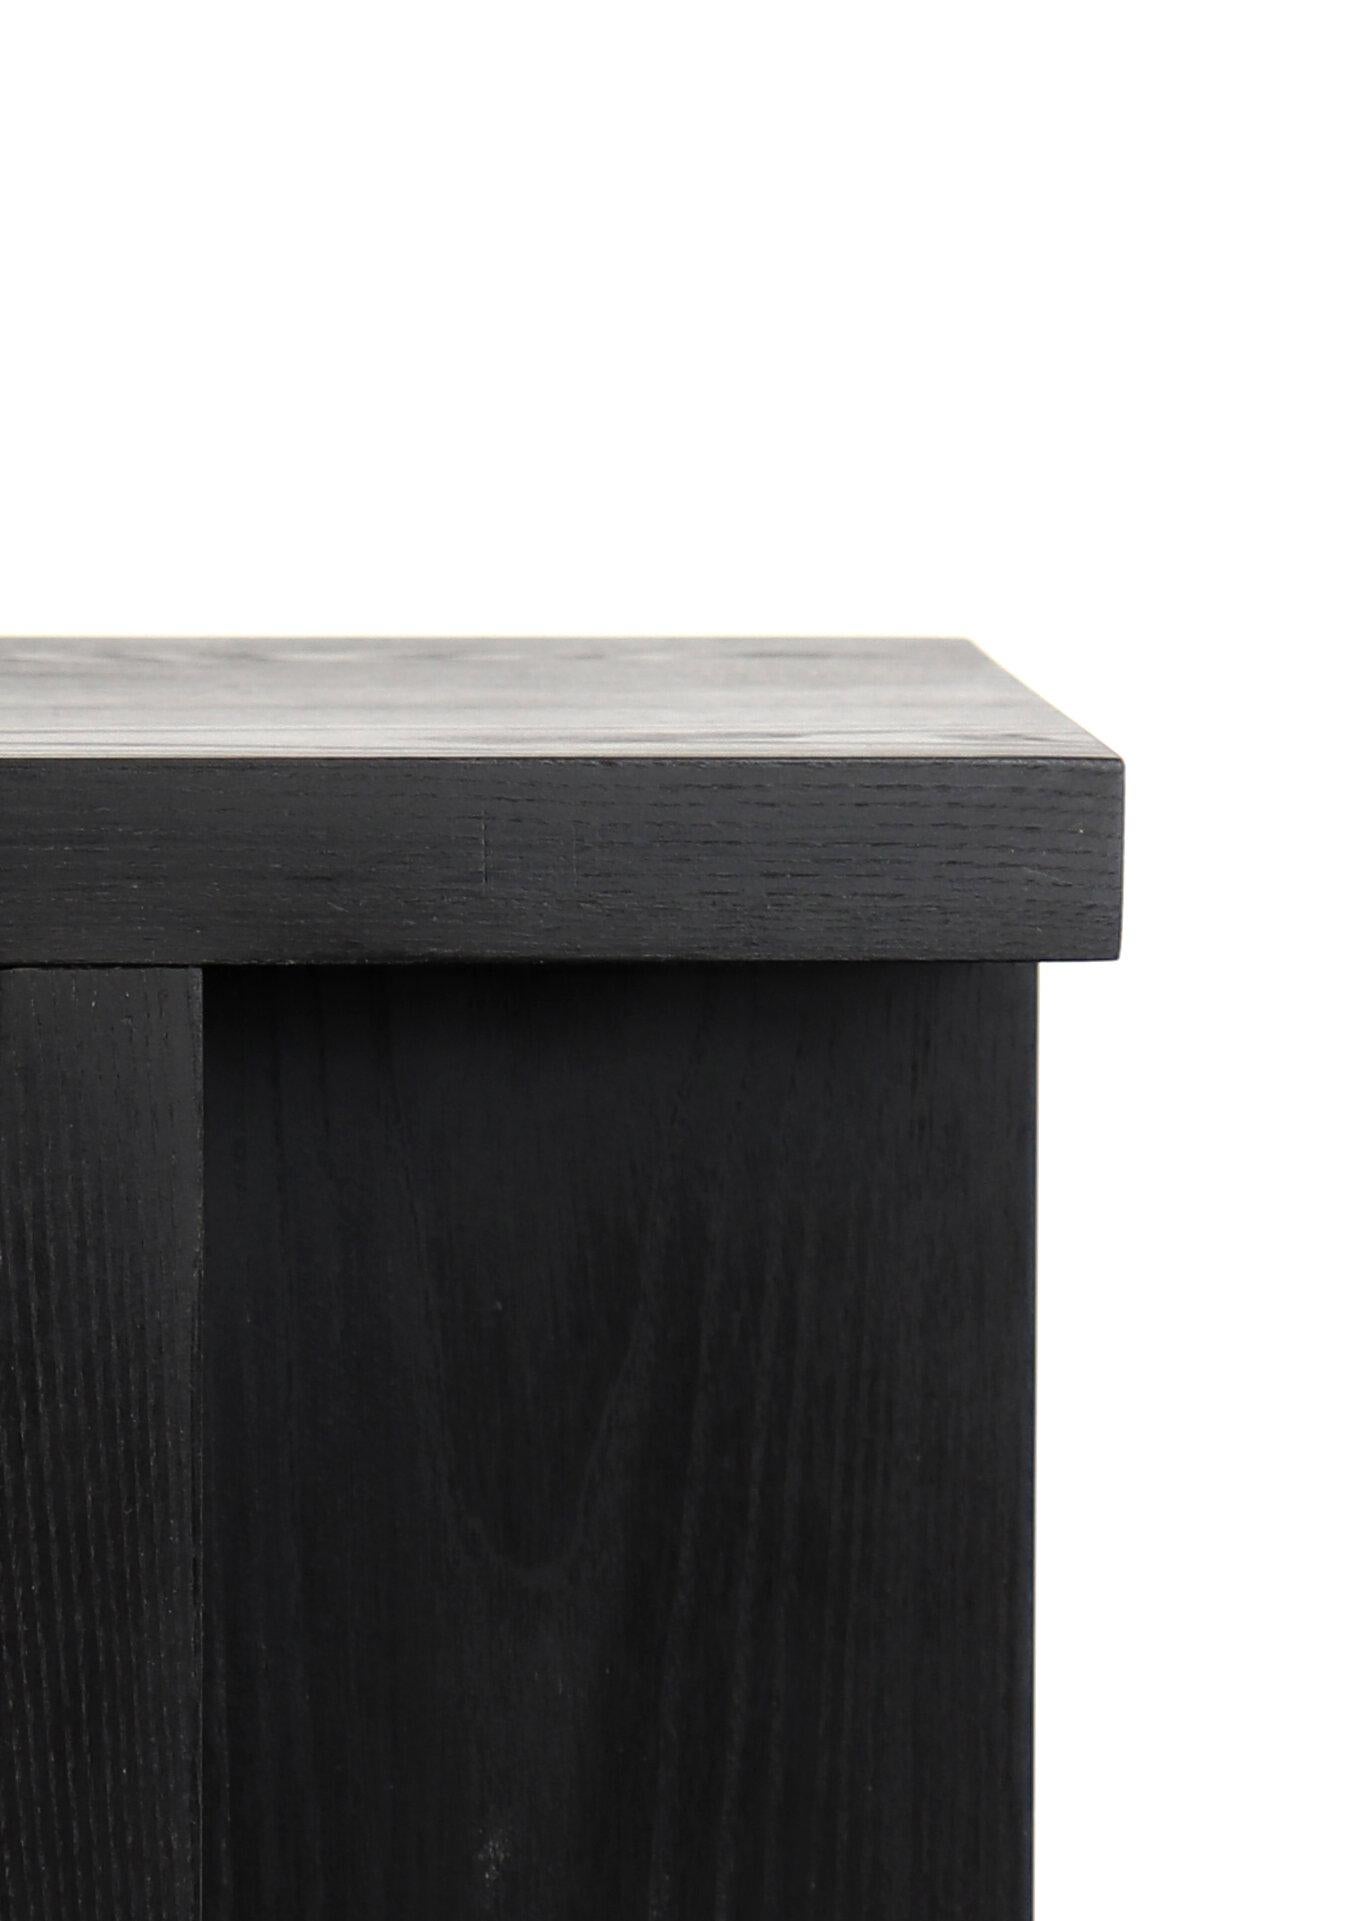 Tabouret / table d'appoint en bois massif, en frêne noirci, avec un plateau carré. D'un design épuré et minimal, ces tabourets sont fabriqués à la main à Portland, dans l'Oregon, à l'aide d'un assemblage à tenon et mortaise dans l'atelier de